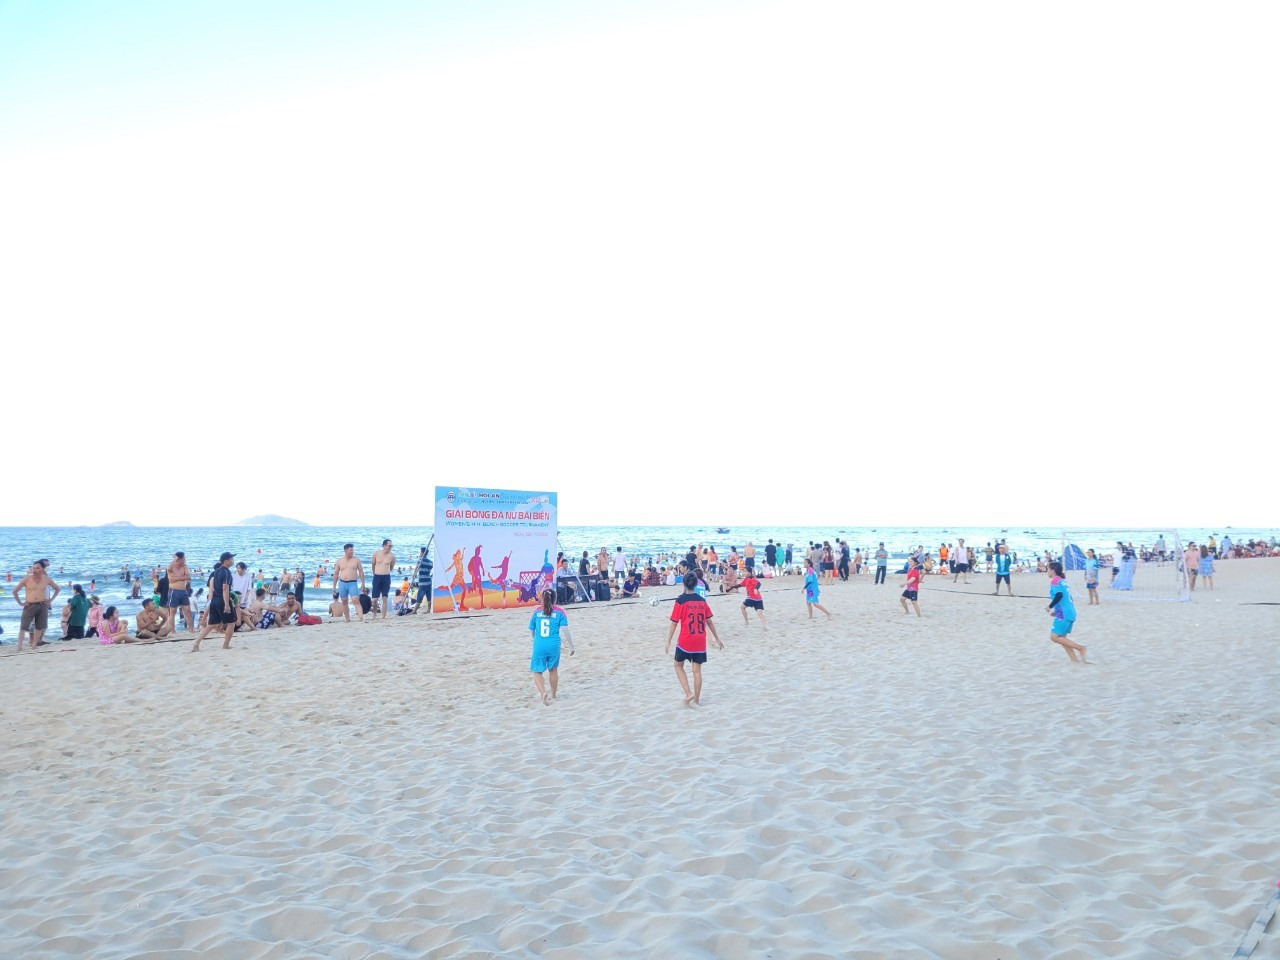 Nhiều hoạt động thể thao biển trong Festival biển “Hội An - cảm xúc mua hè” tạo không khí sôi động thu hút du khách và cộng đồng địa phương hưởng ứng. Ảnh: P.Q